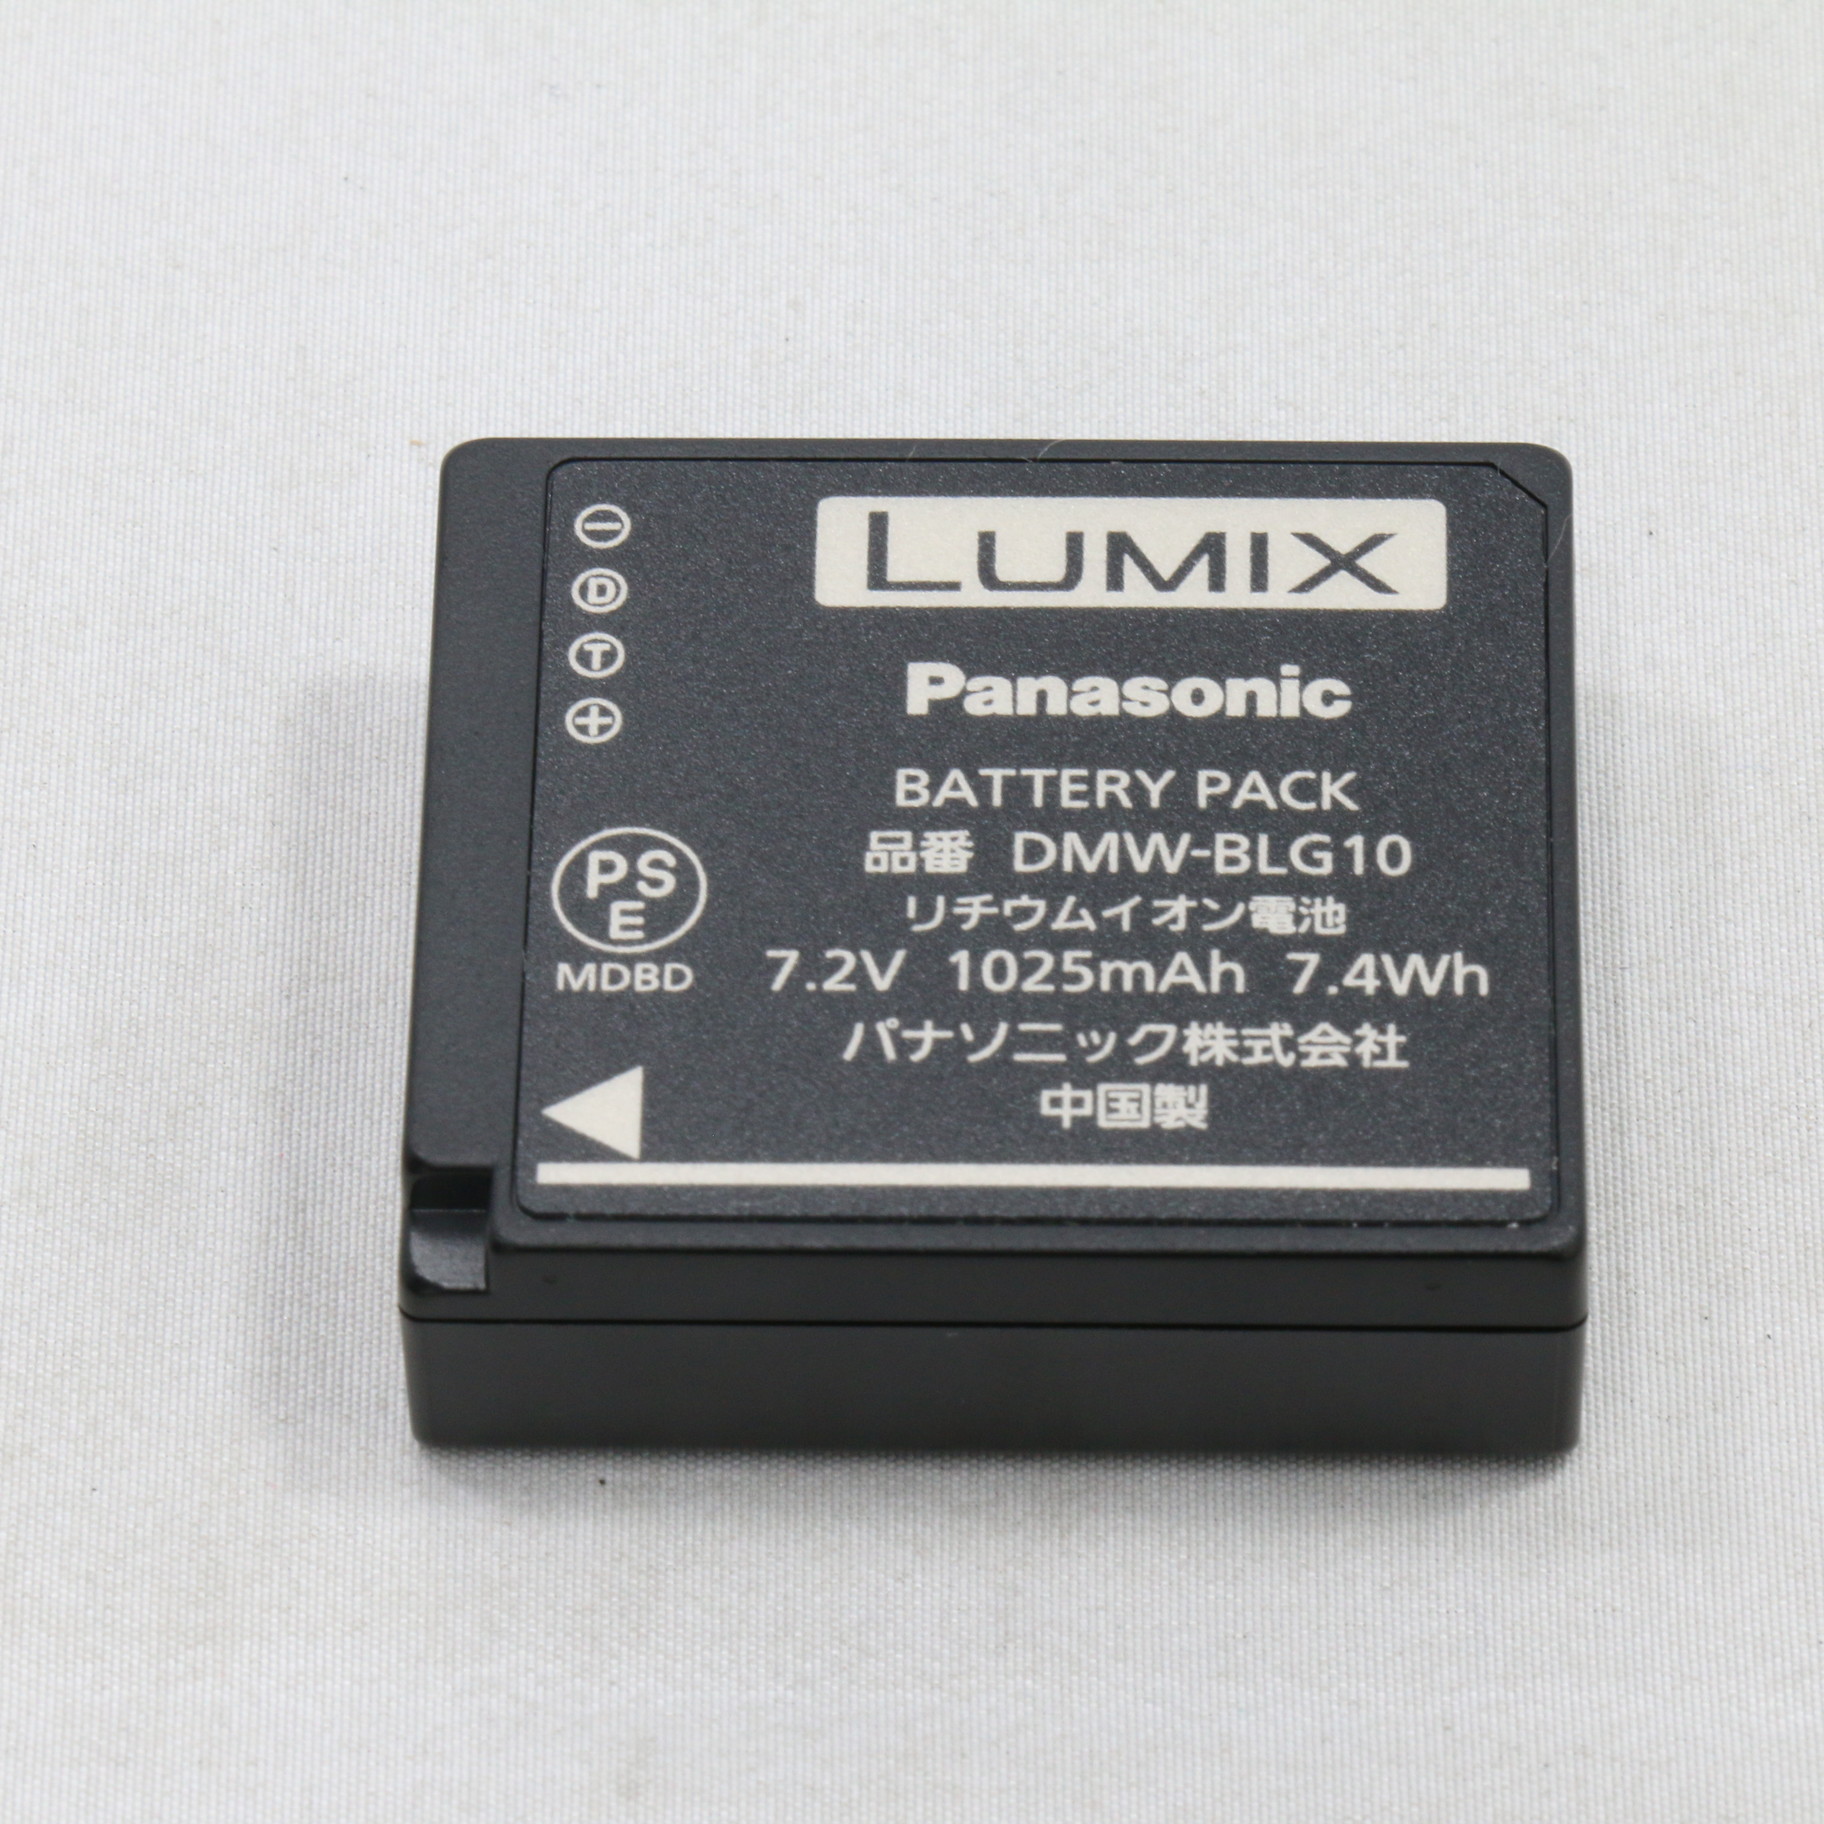 パナソニック(Panasonic) DMW-BLG10 バッテリーパック - カメラ